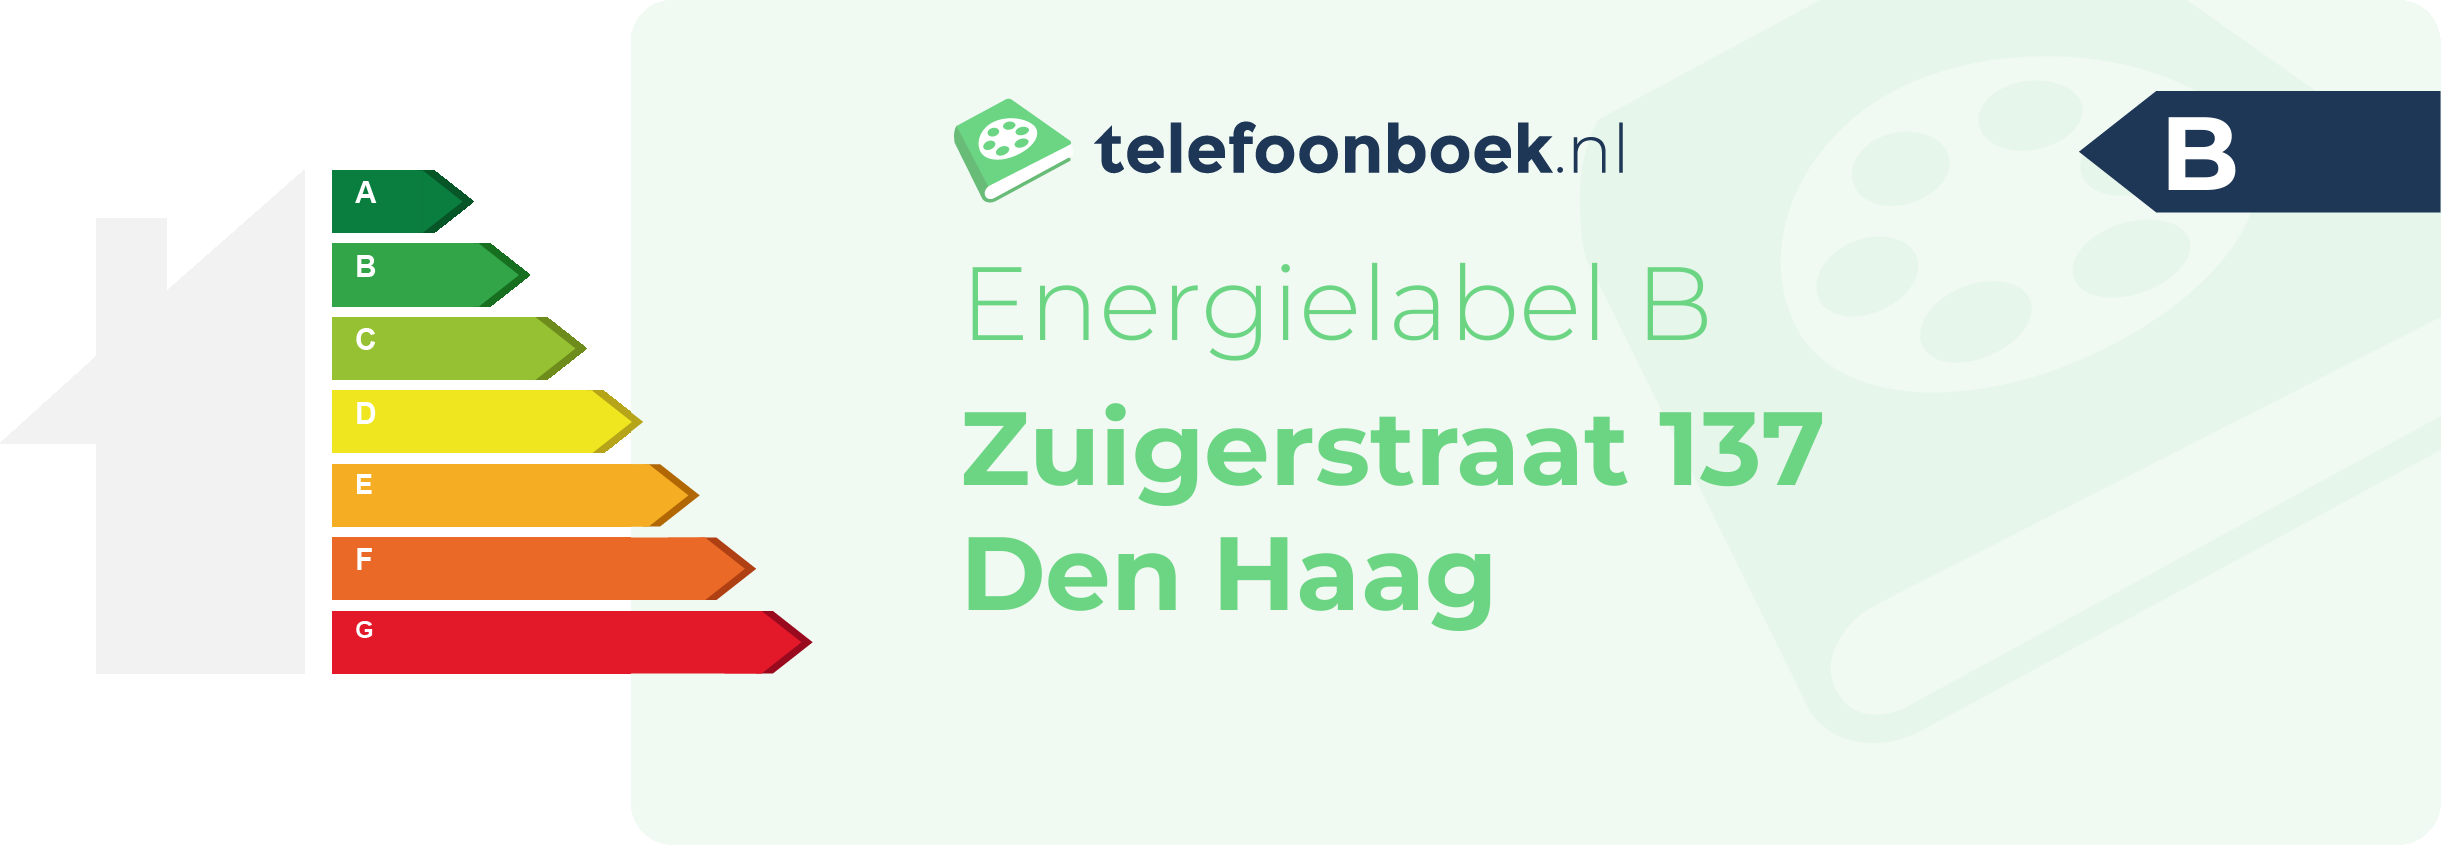 Energielabel Zuigerstraat 137 Den Haag